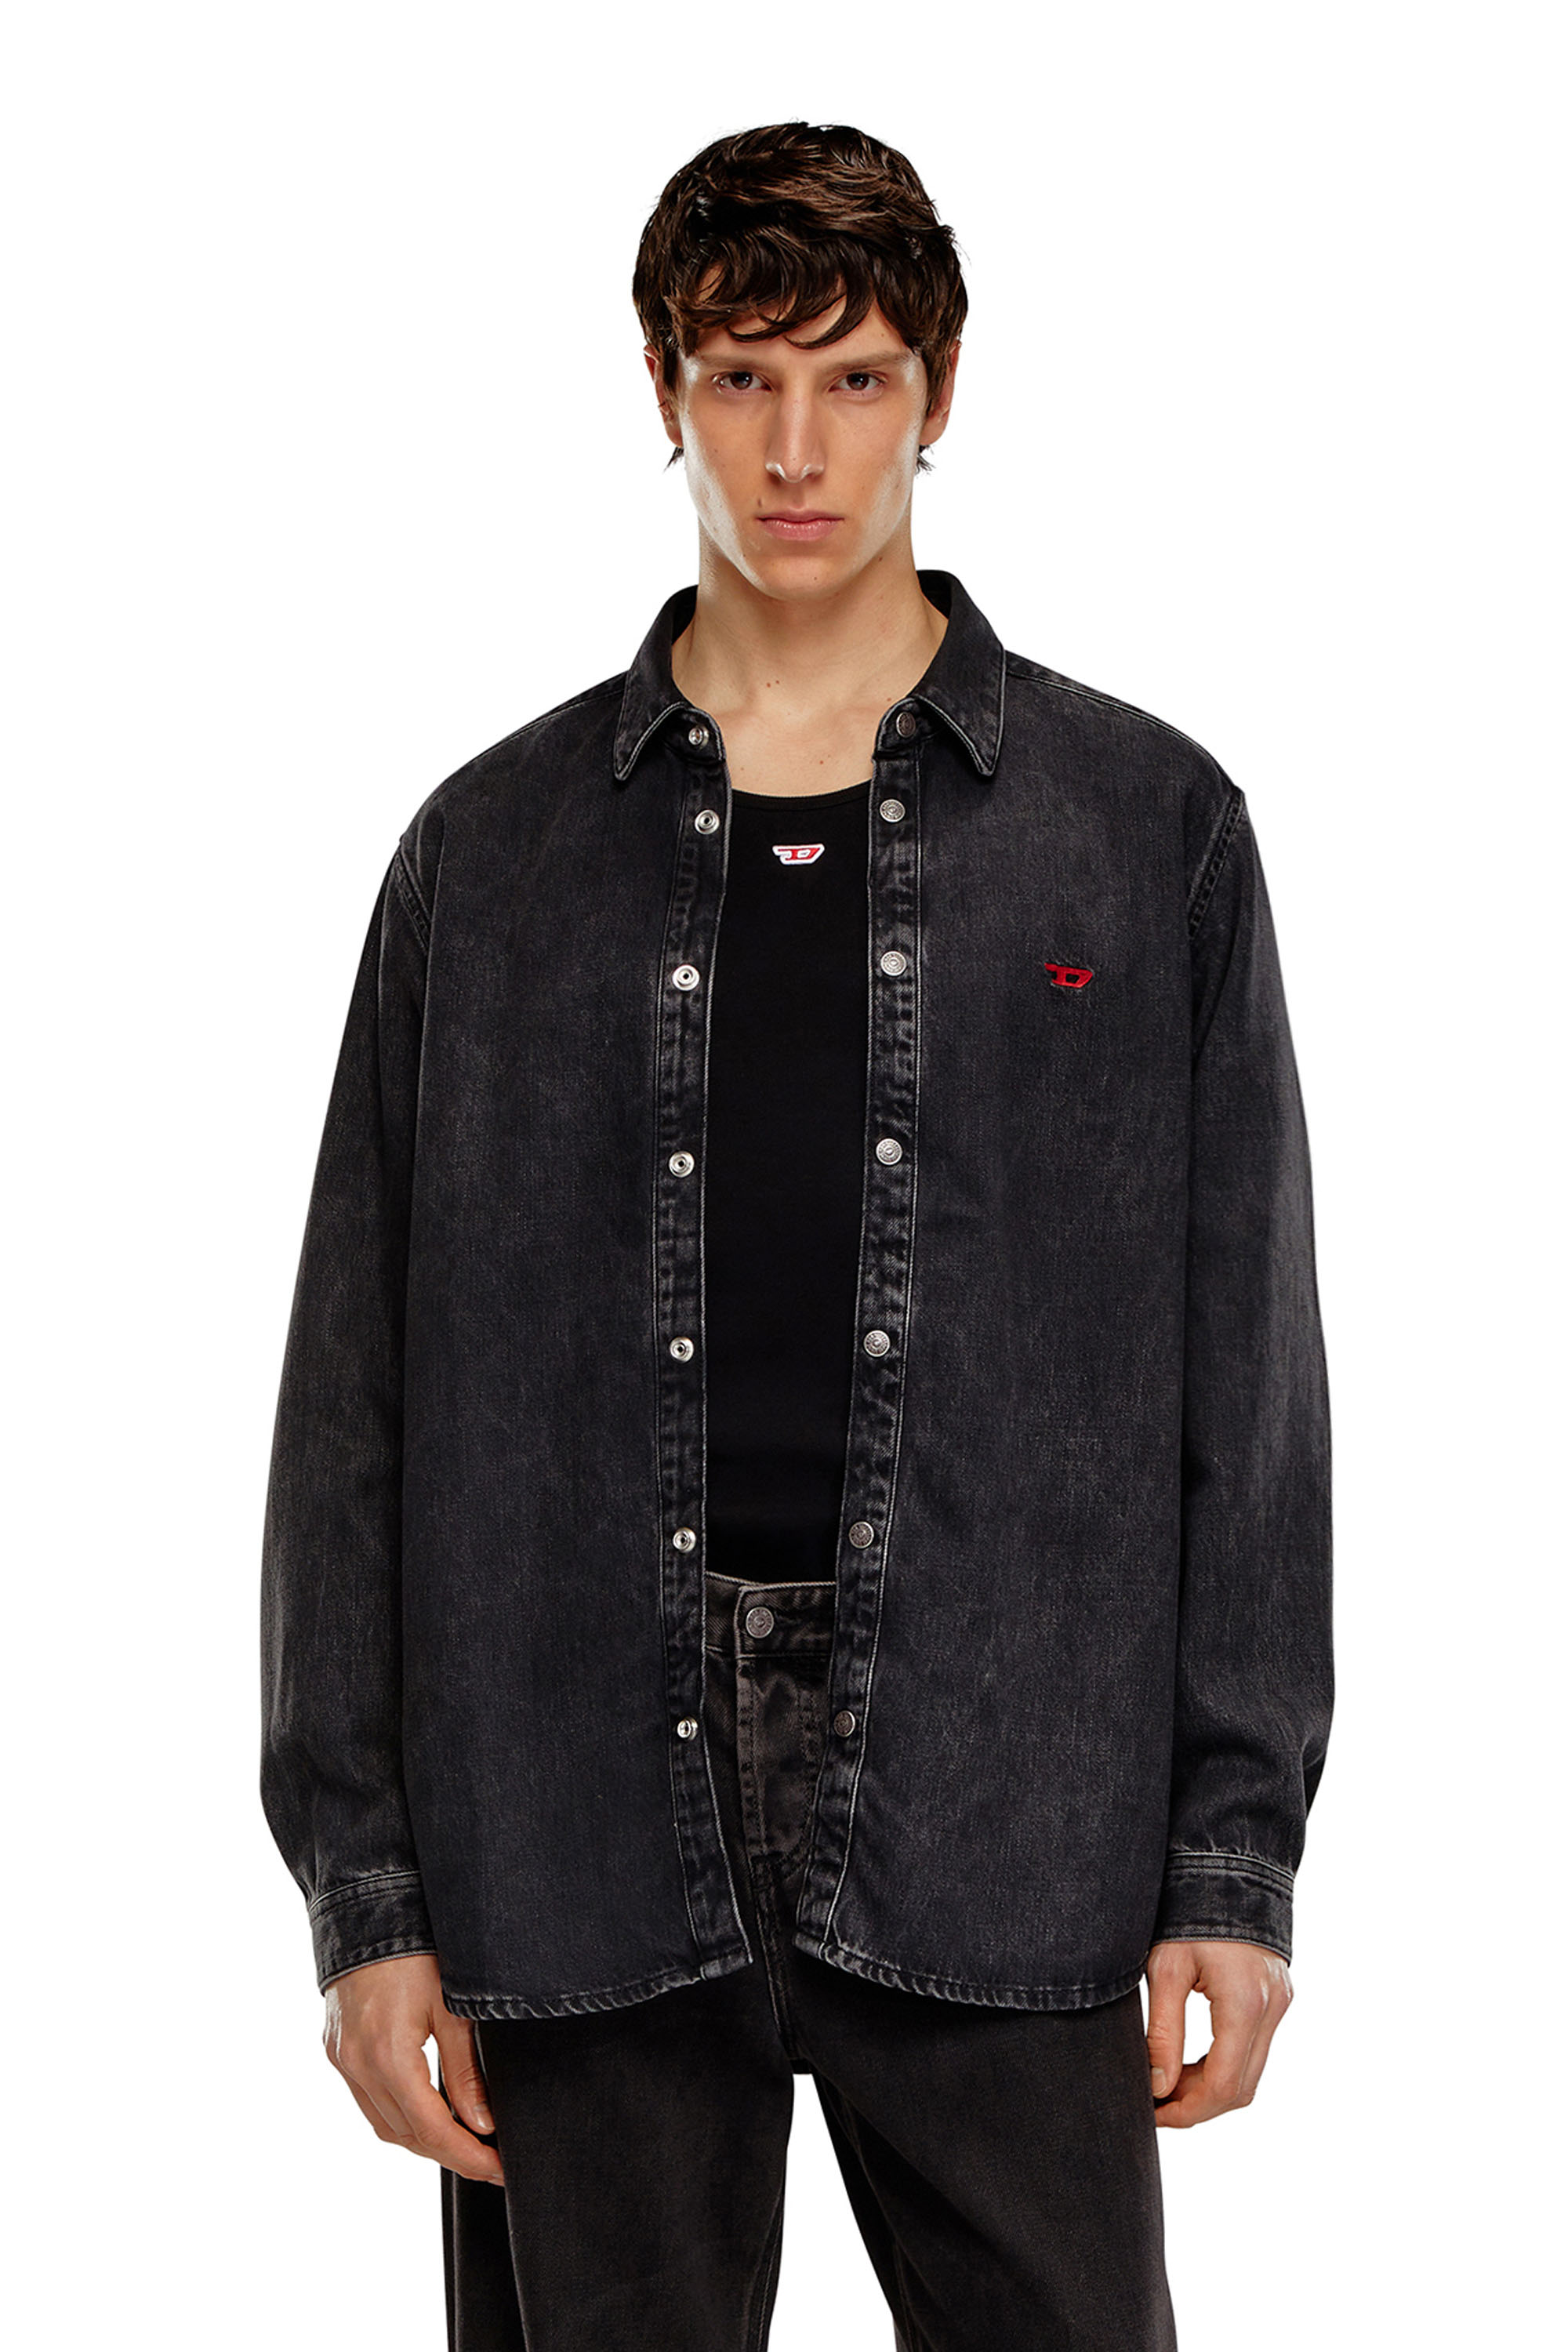 Diesel - D-SIMPLY, Male Shirt in Tencel denim in Black - Image 1